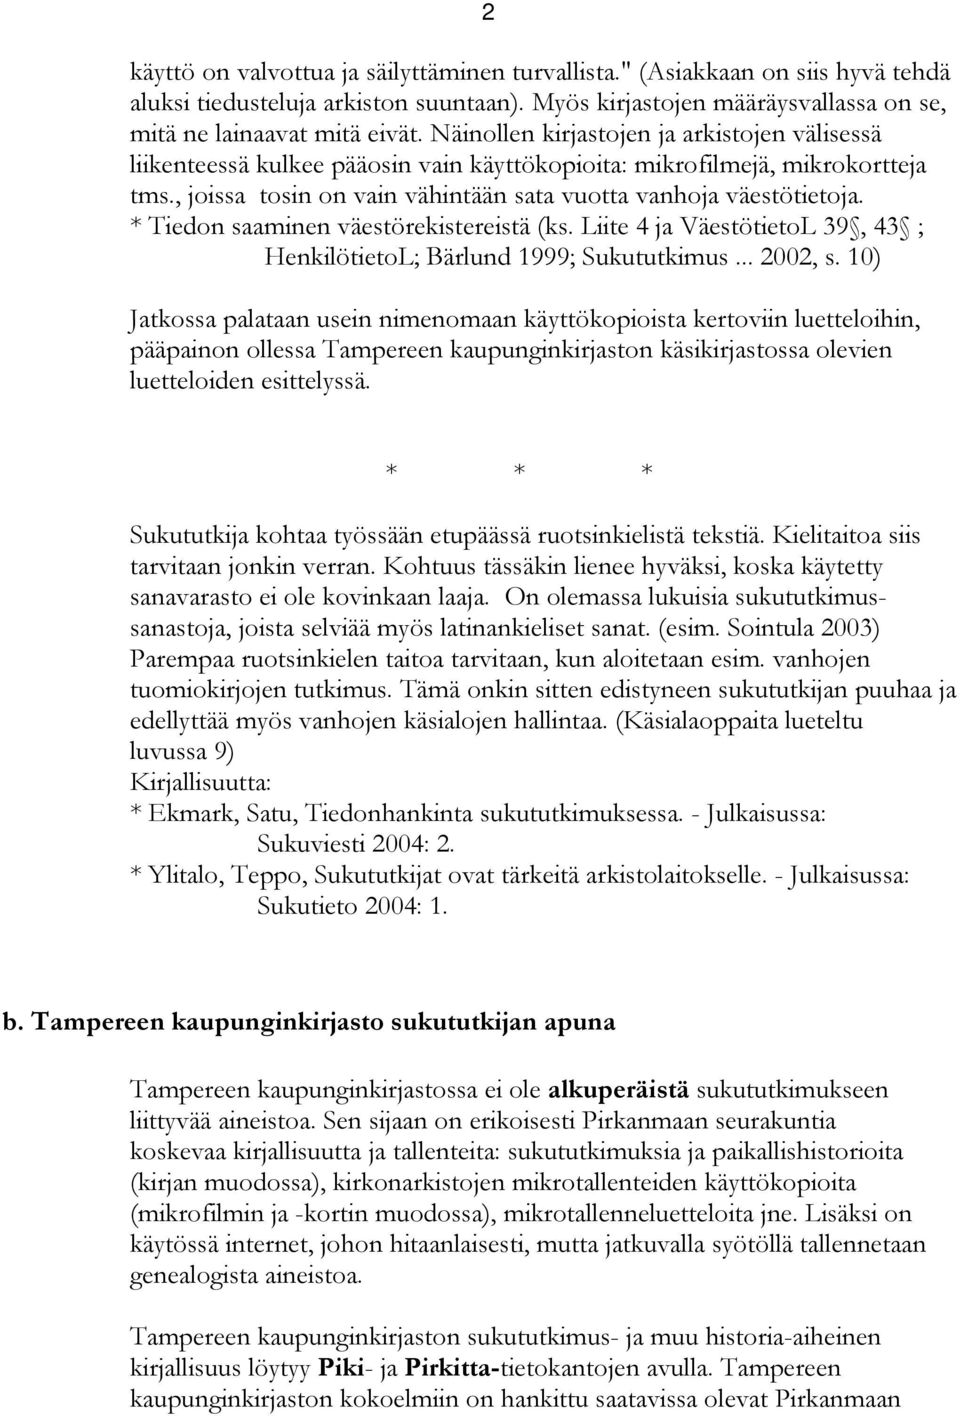 * Tiedon saaminen väestörekistereistä (ks. Liite 4 ja VäestötietoL 39, 43 ; HenkilötietoL; Bärlund 1999; Sukututkimus... 2002, s.